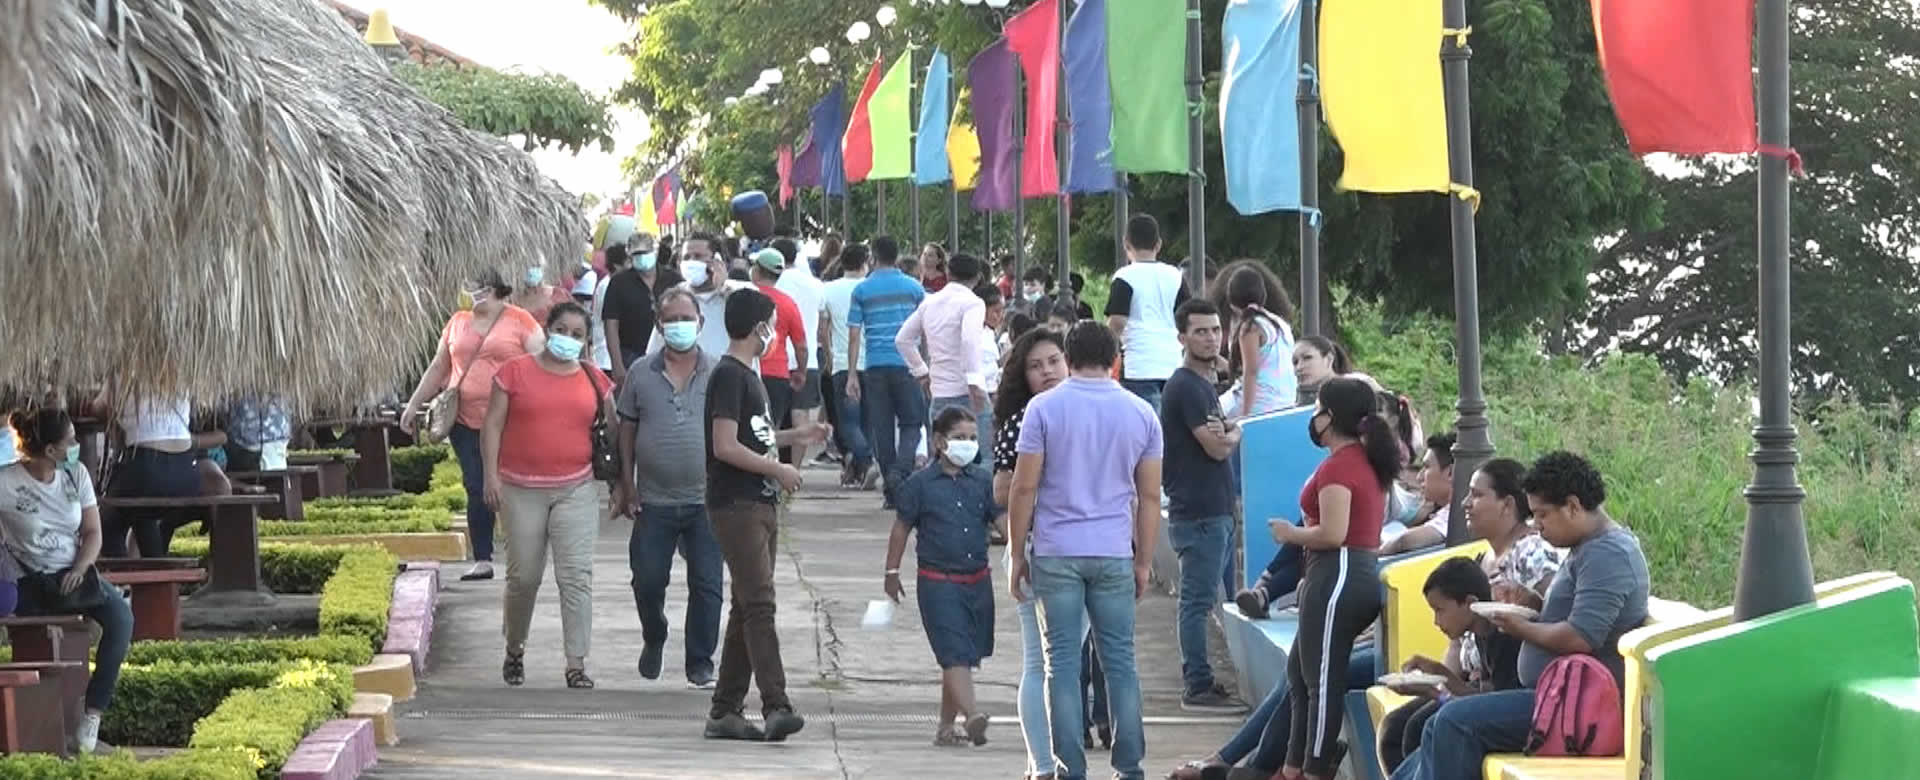 Puerto Salvador Allende recibe 31 mil visitas en los últimos siete días